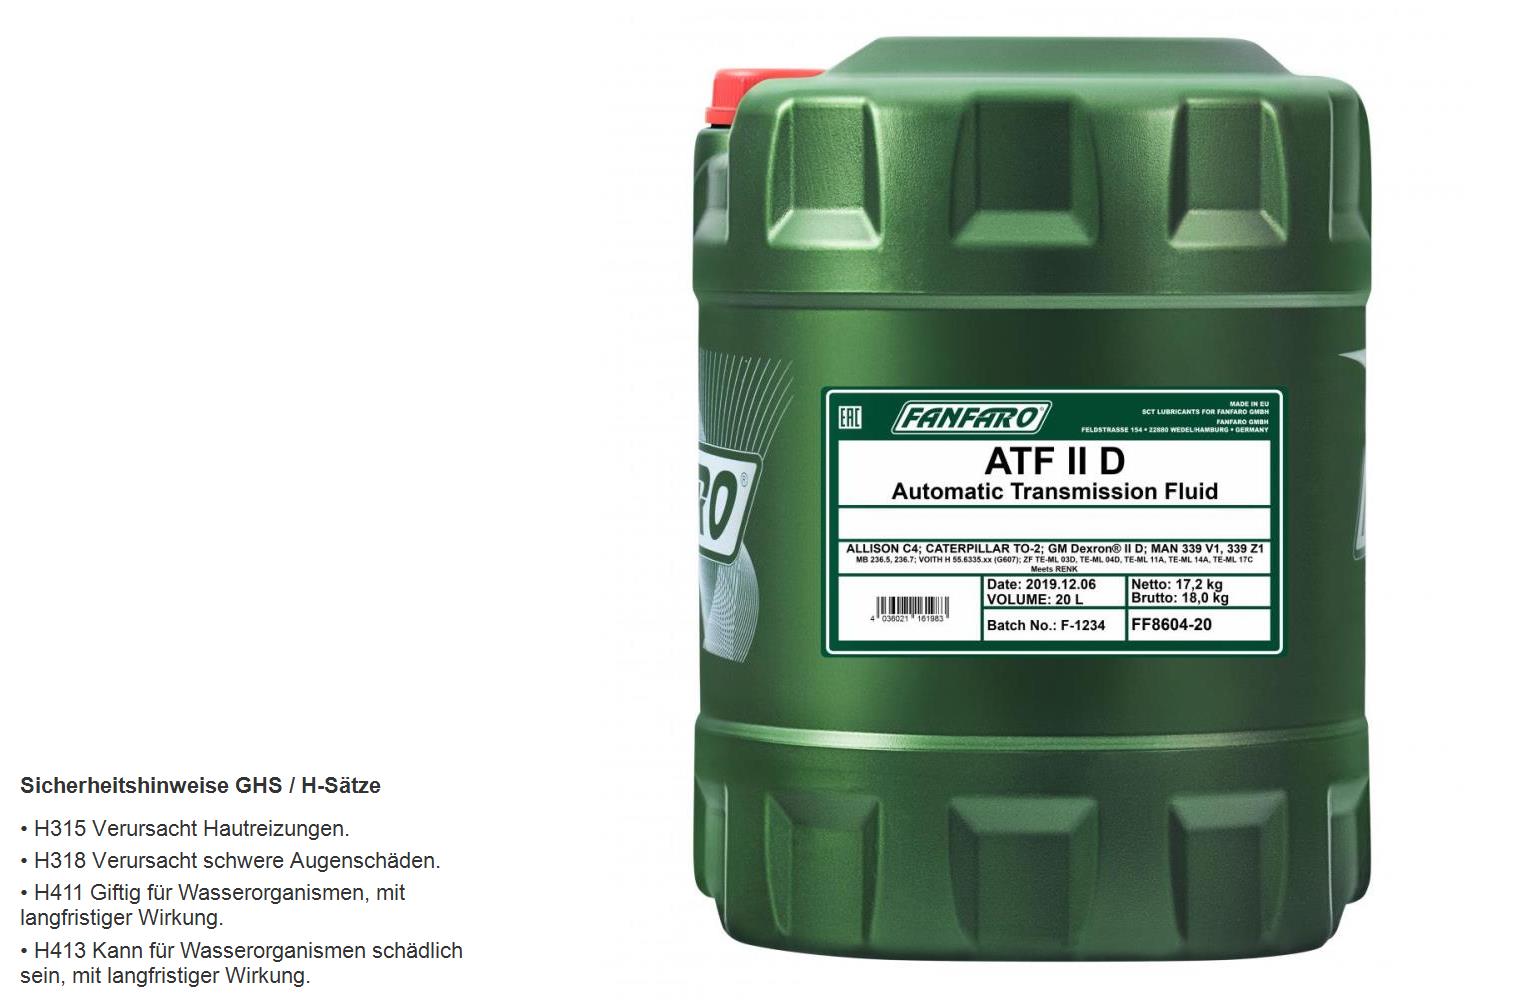 20 Liter FANFARO Automatikgetriebeöl ATF IID Gear Oil Öl